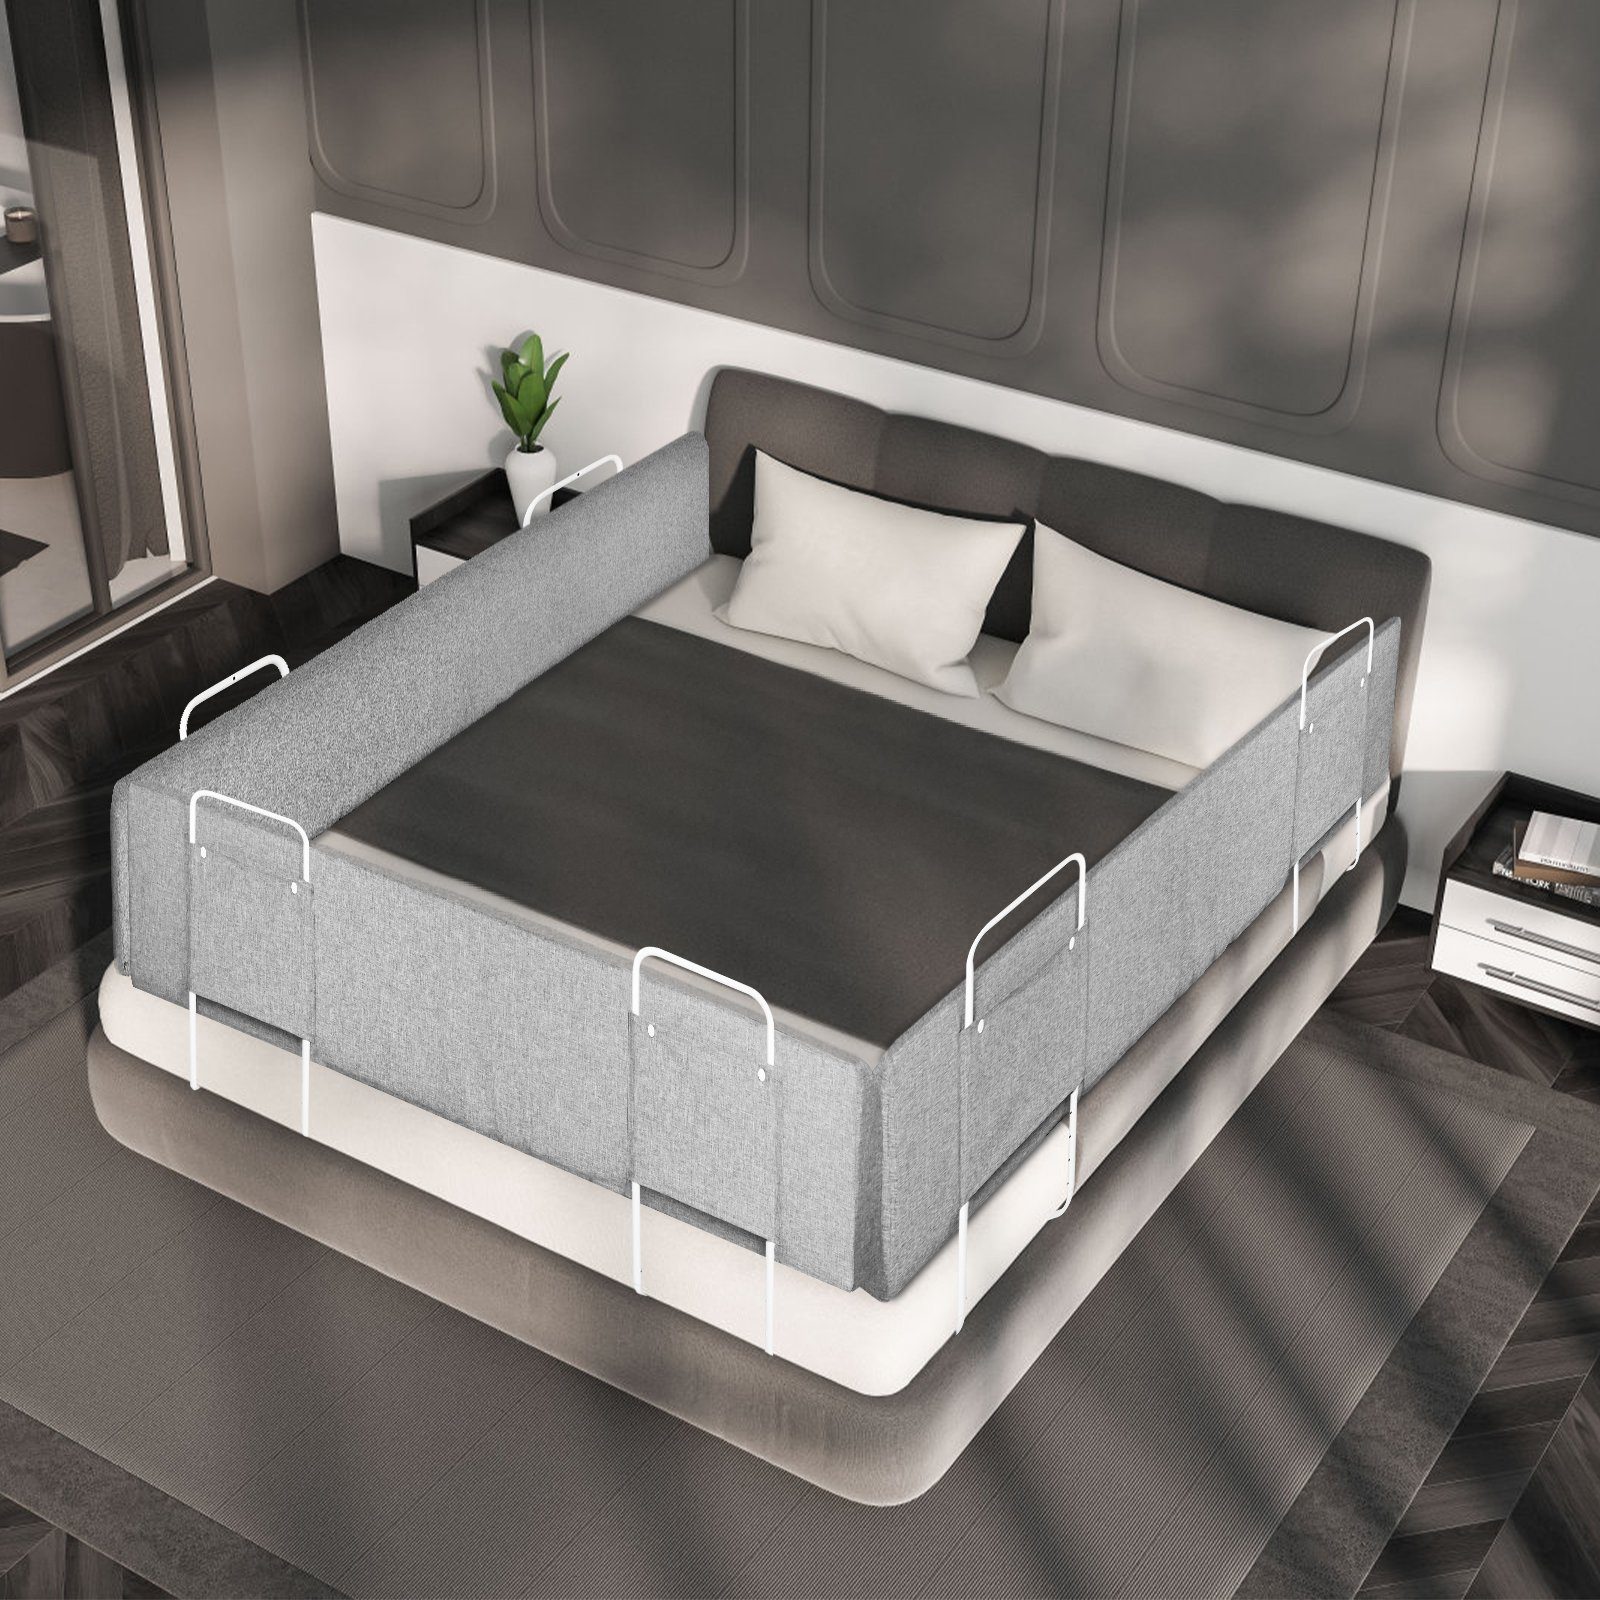 AUFUN Bettschutzgitter Bumper Kinderbett, für Bettkantenschutz Bed Portable